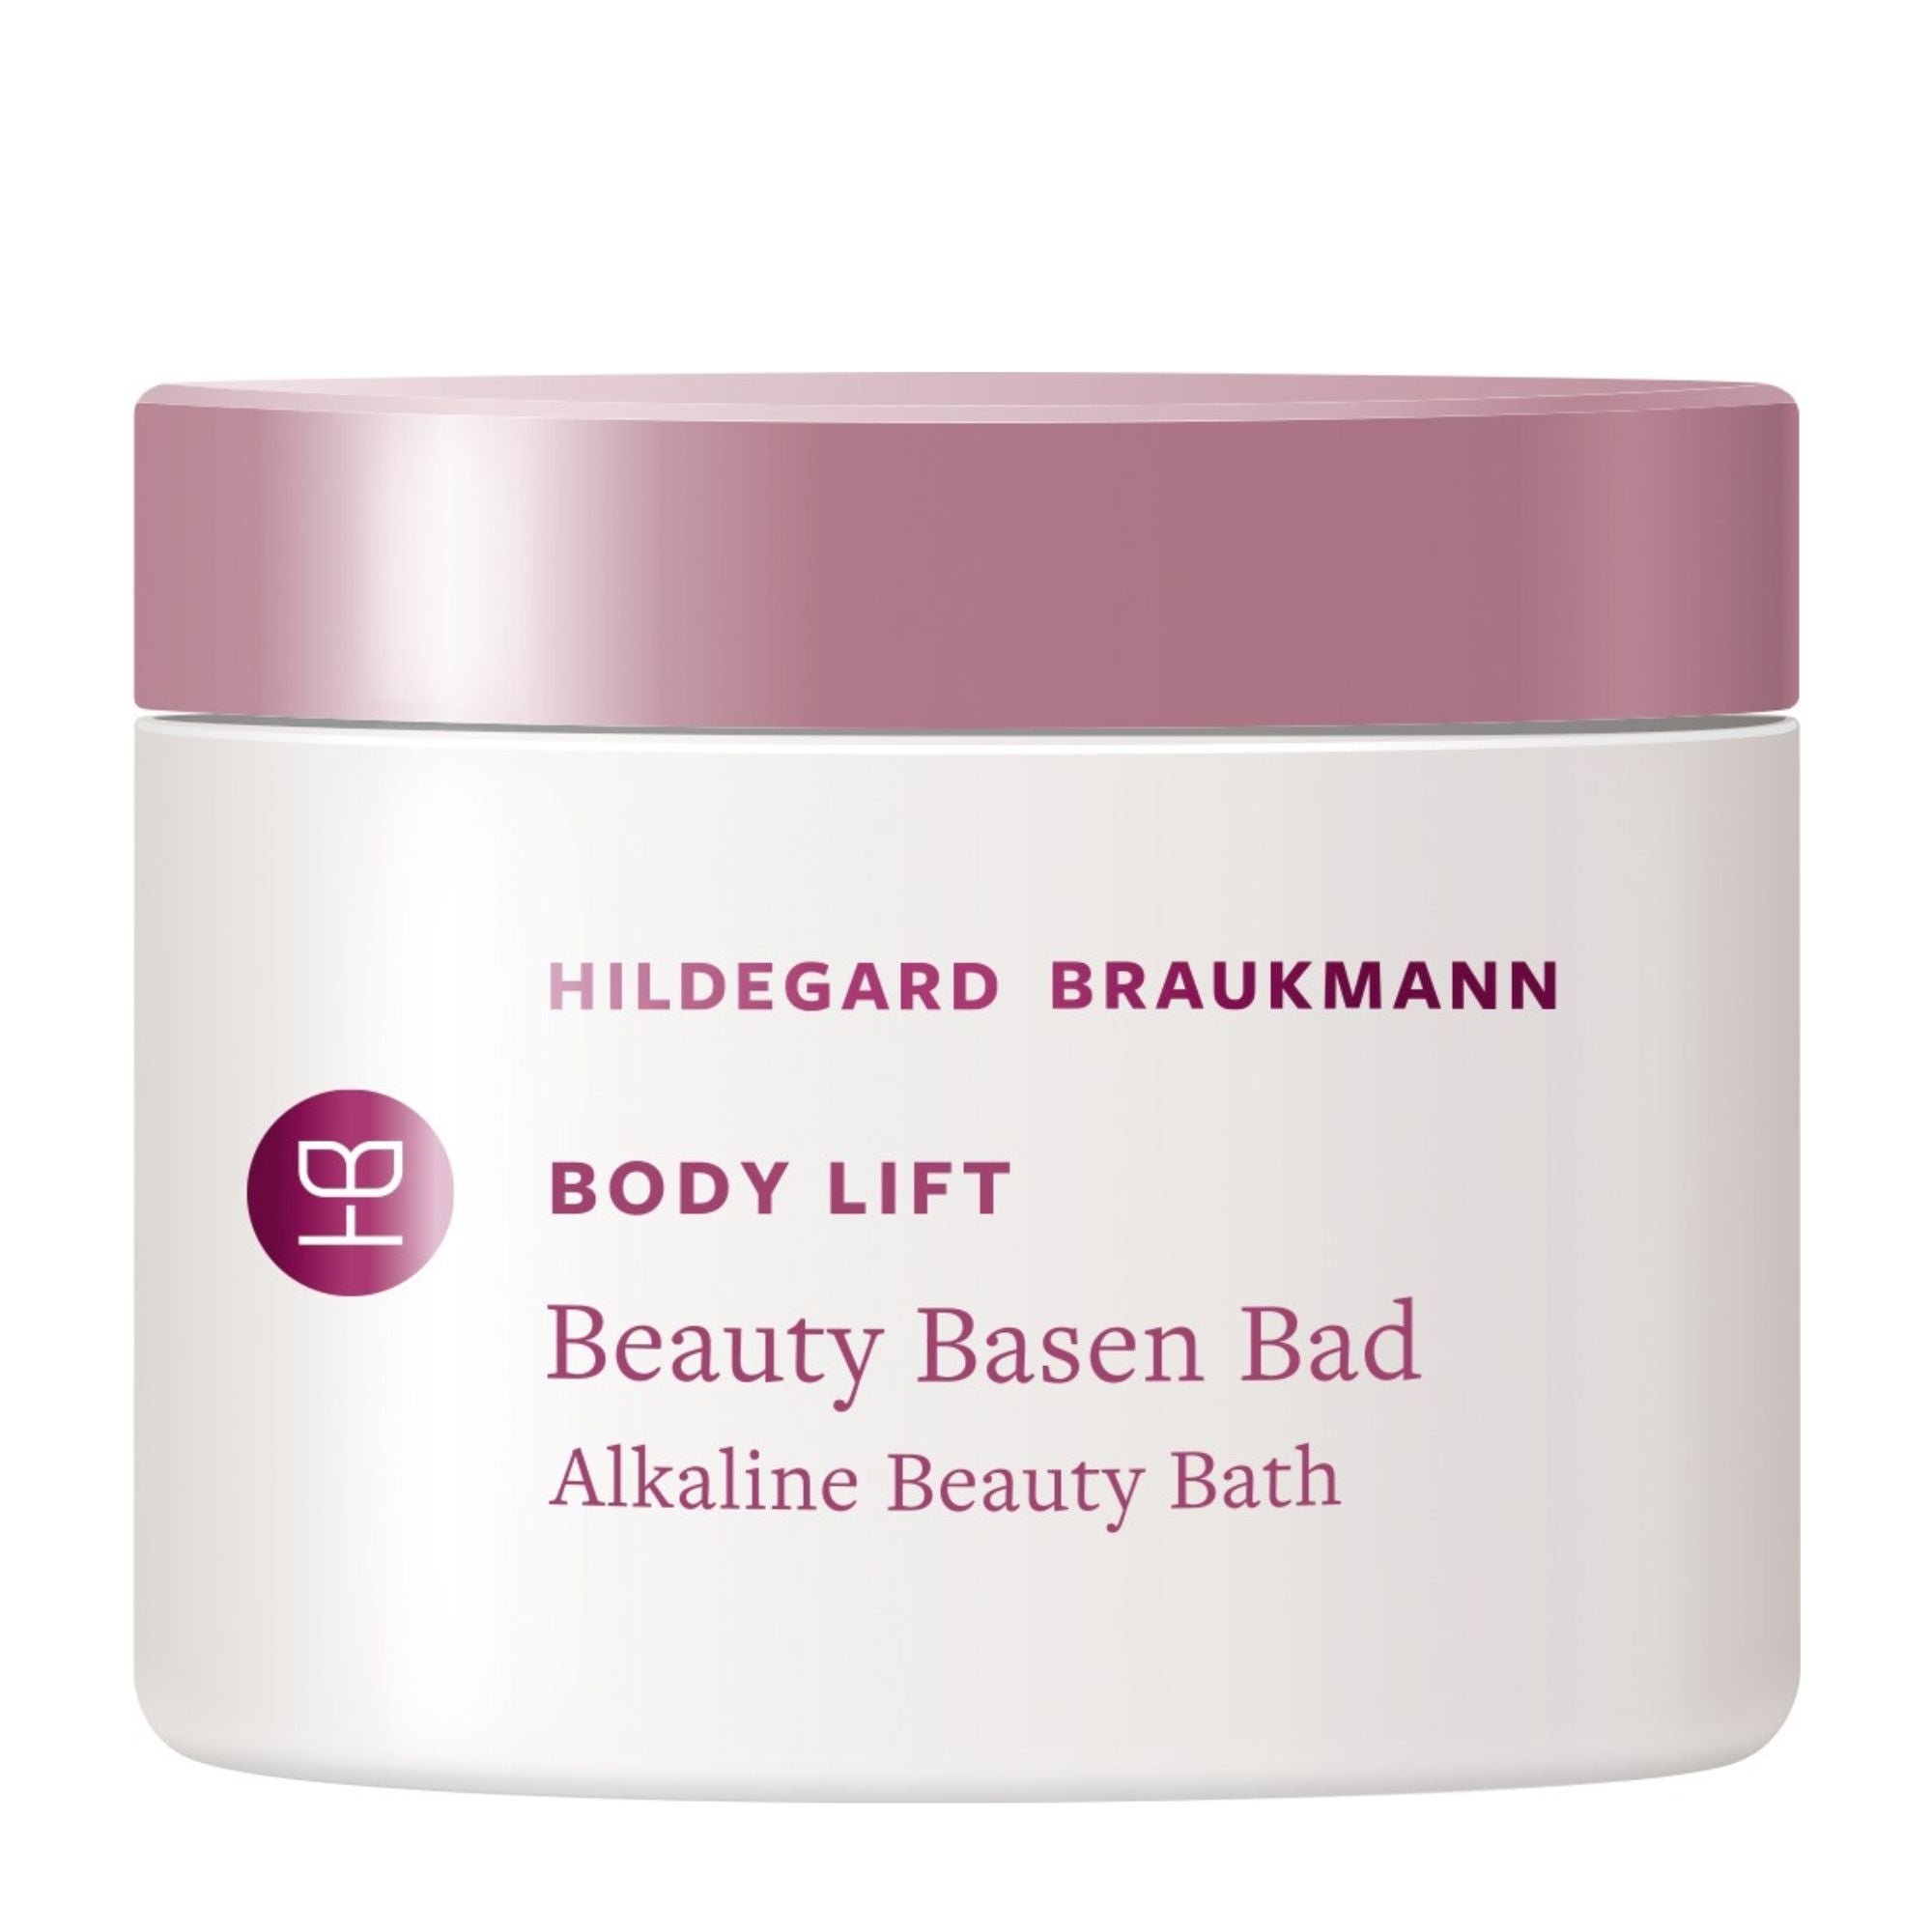 Hildegard Braukmann Body Lift Beauty Basen Bad (200g)